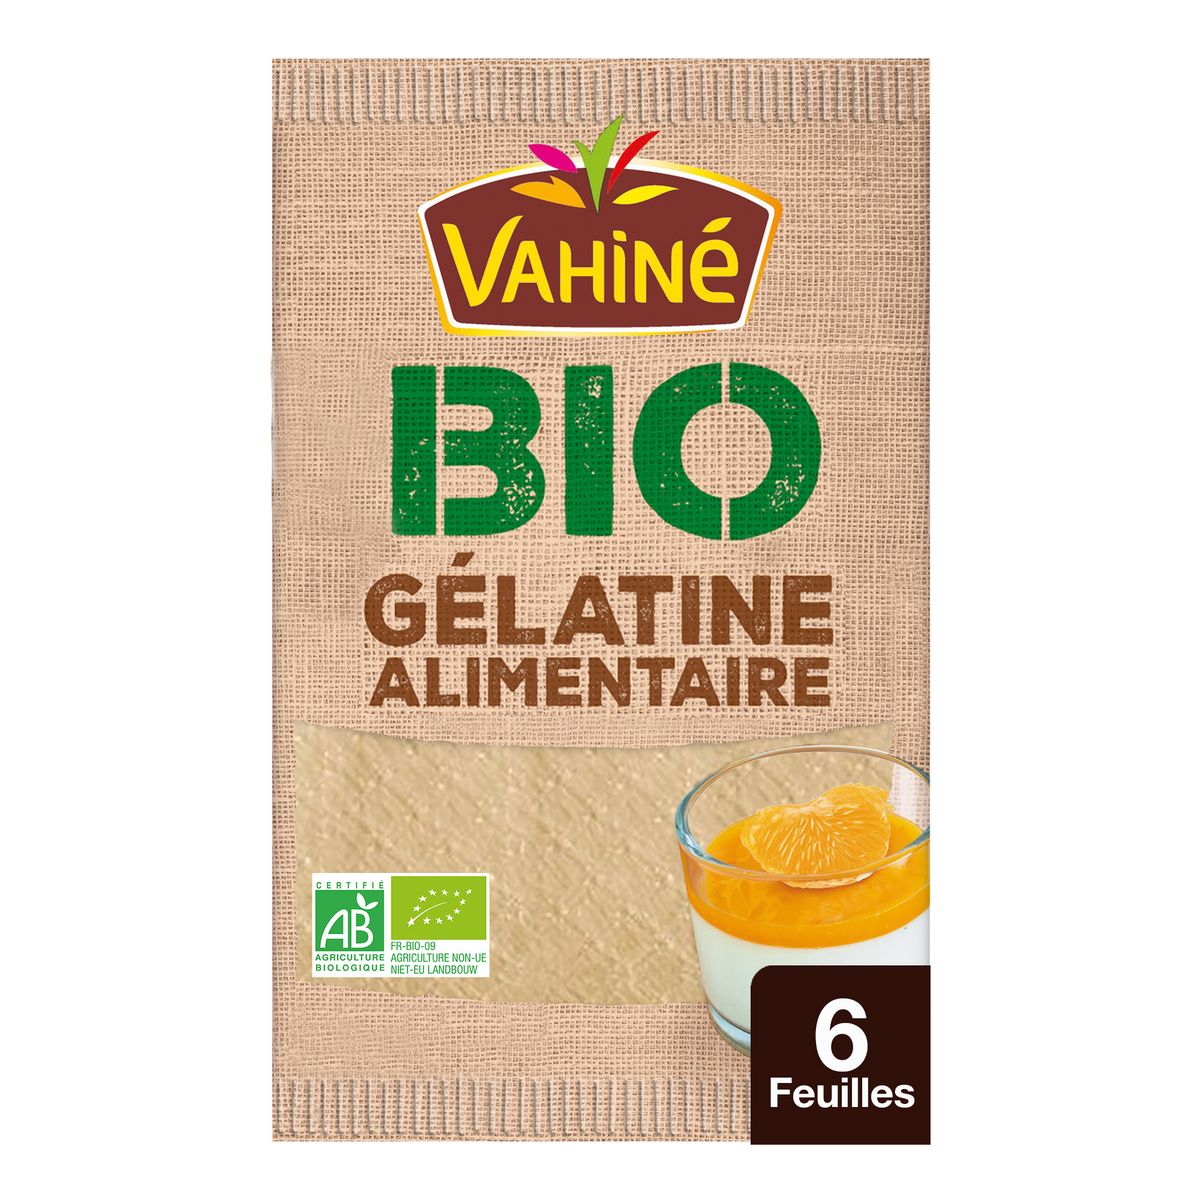 VAHINE Feuilles de gélatine alimentaire bio 6 feuilles 10g